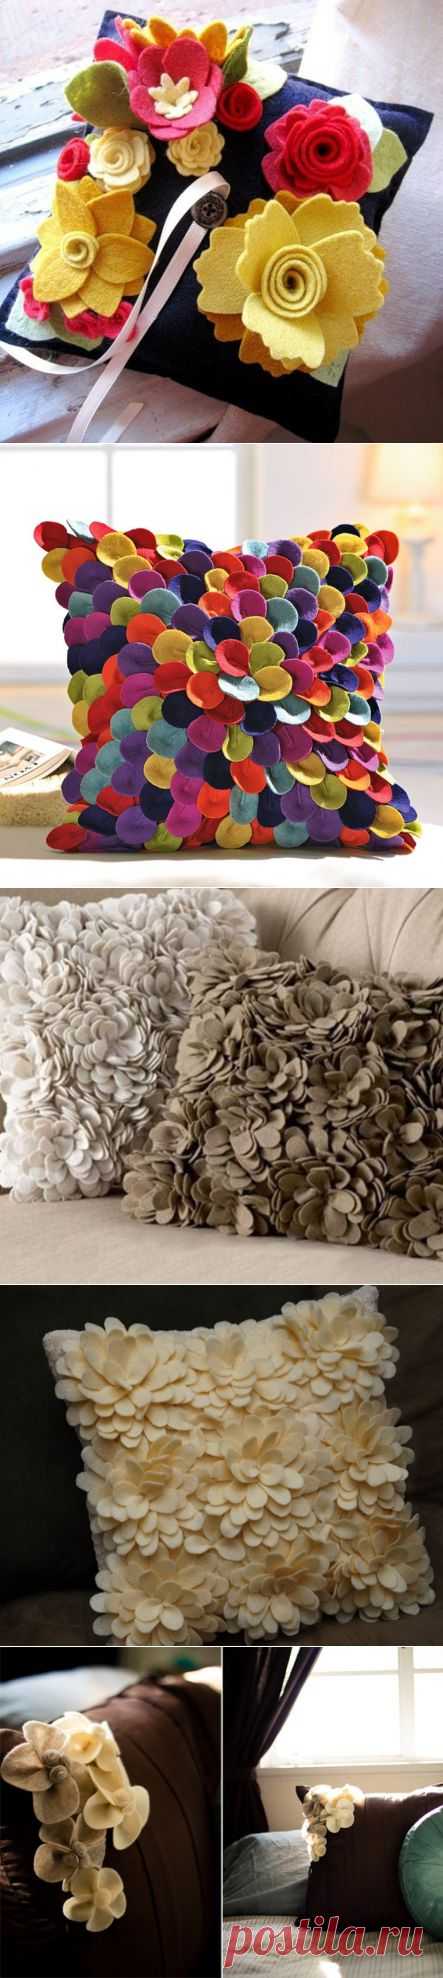 Украшение подушек цветами из фетра. Идеи +МК